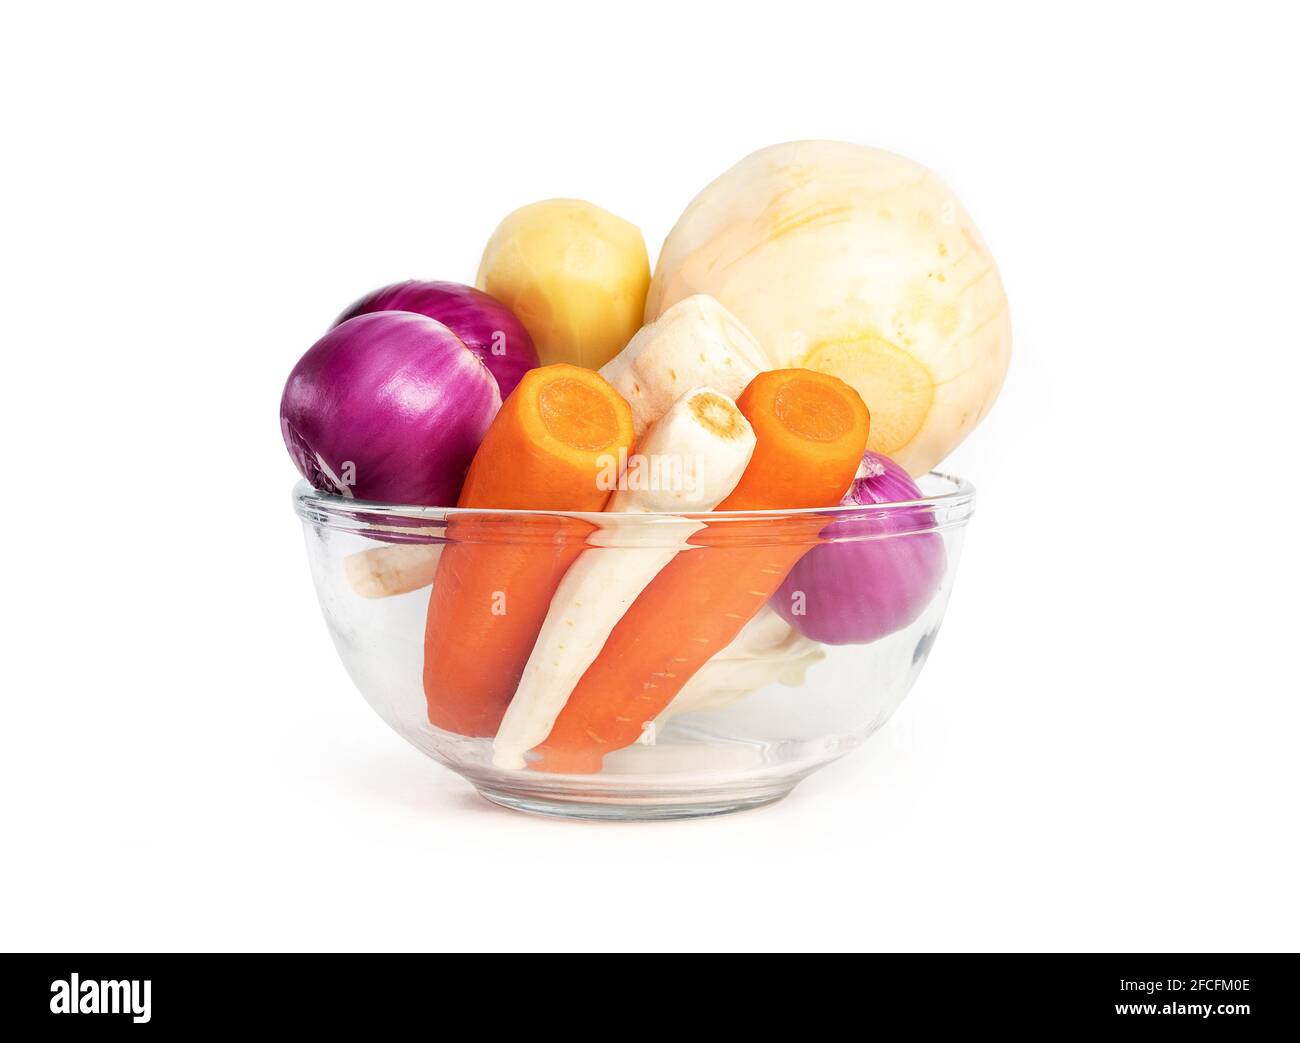 Légumes-racines épluchés dans un bol en verre. Légumes d'hiver prêts à l'emploi pour soupes, chips, ragoûts et smoothies. Concept pour des repas sains à préparer, bu Banque D'Images